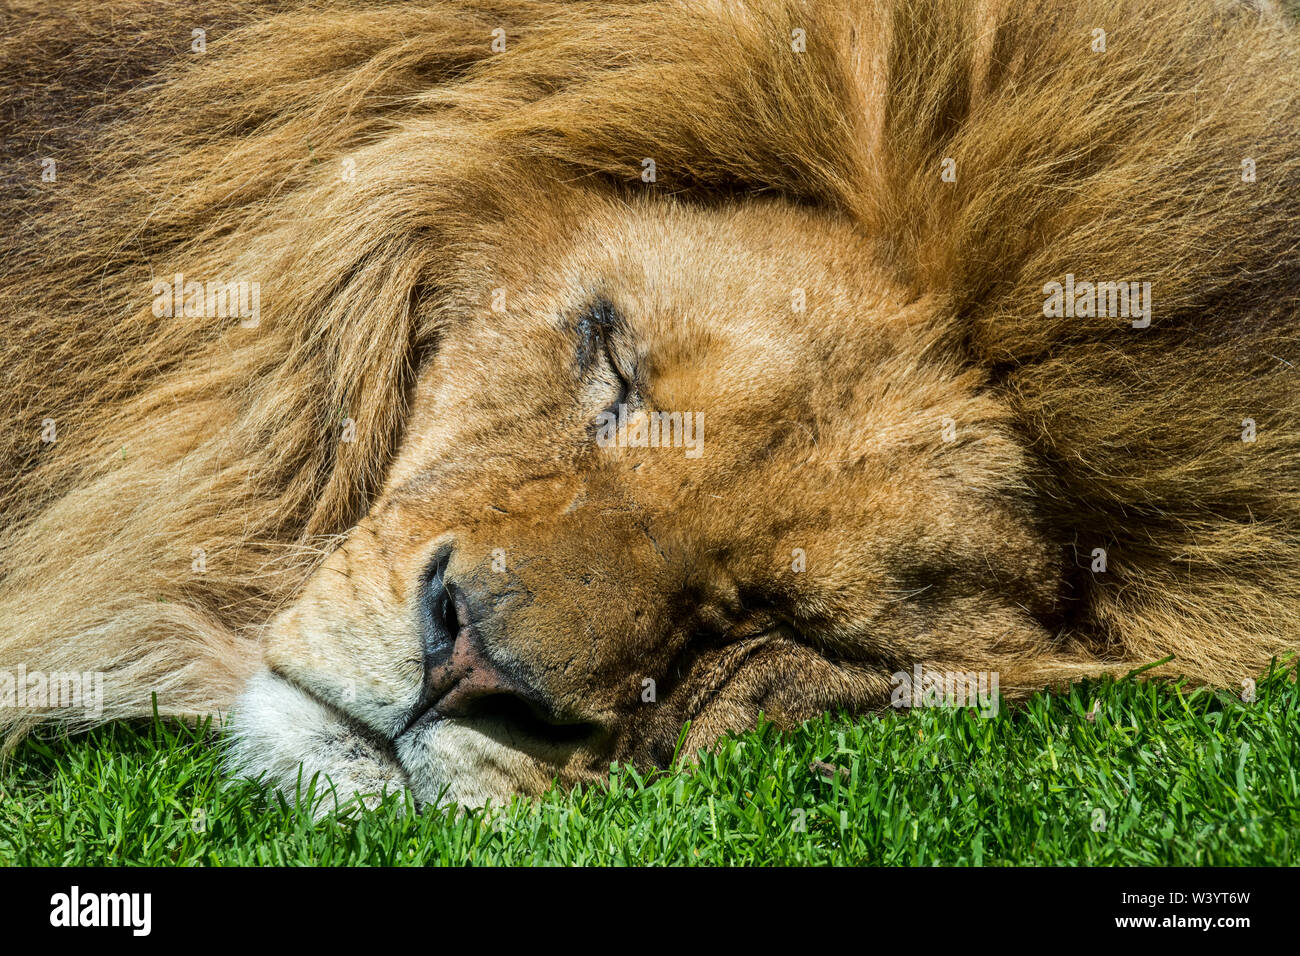 Close-up portrait of African lion mâle de couchage (Panthera leo) Banque D'Images